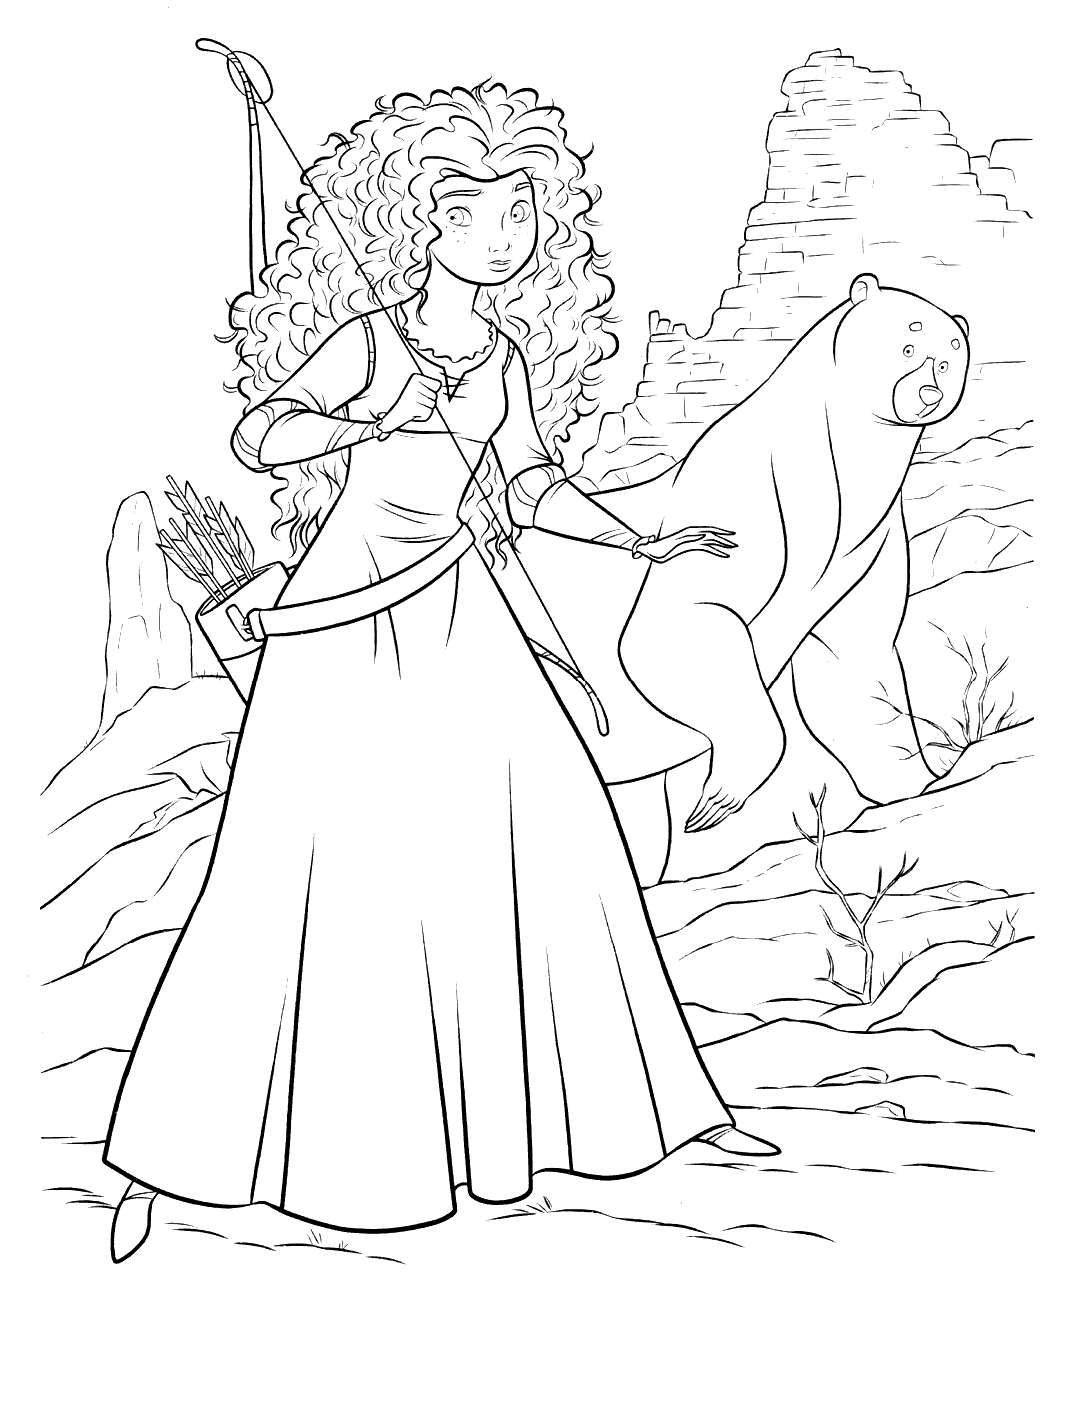 A Mérida e a sua mãe transformadas num urso pelo feitiço da bruxa!